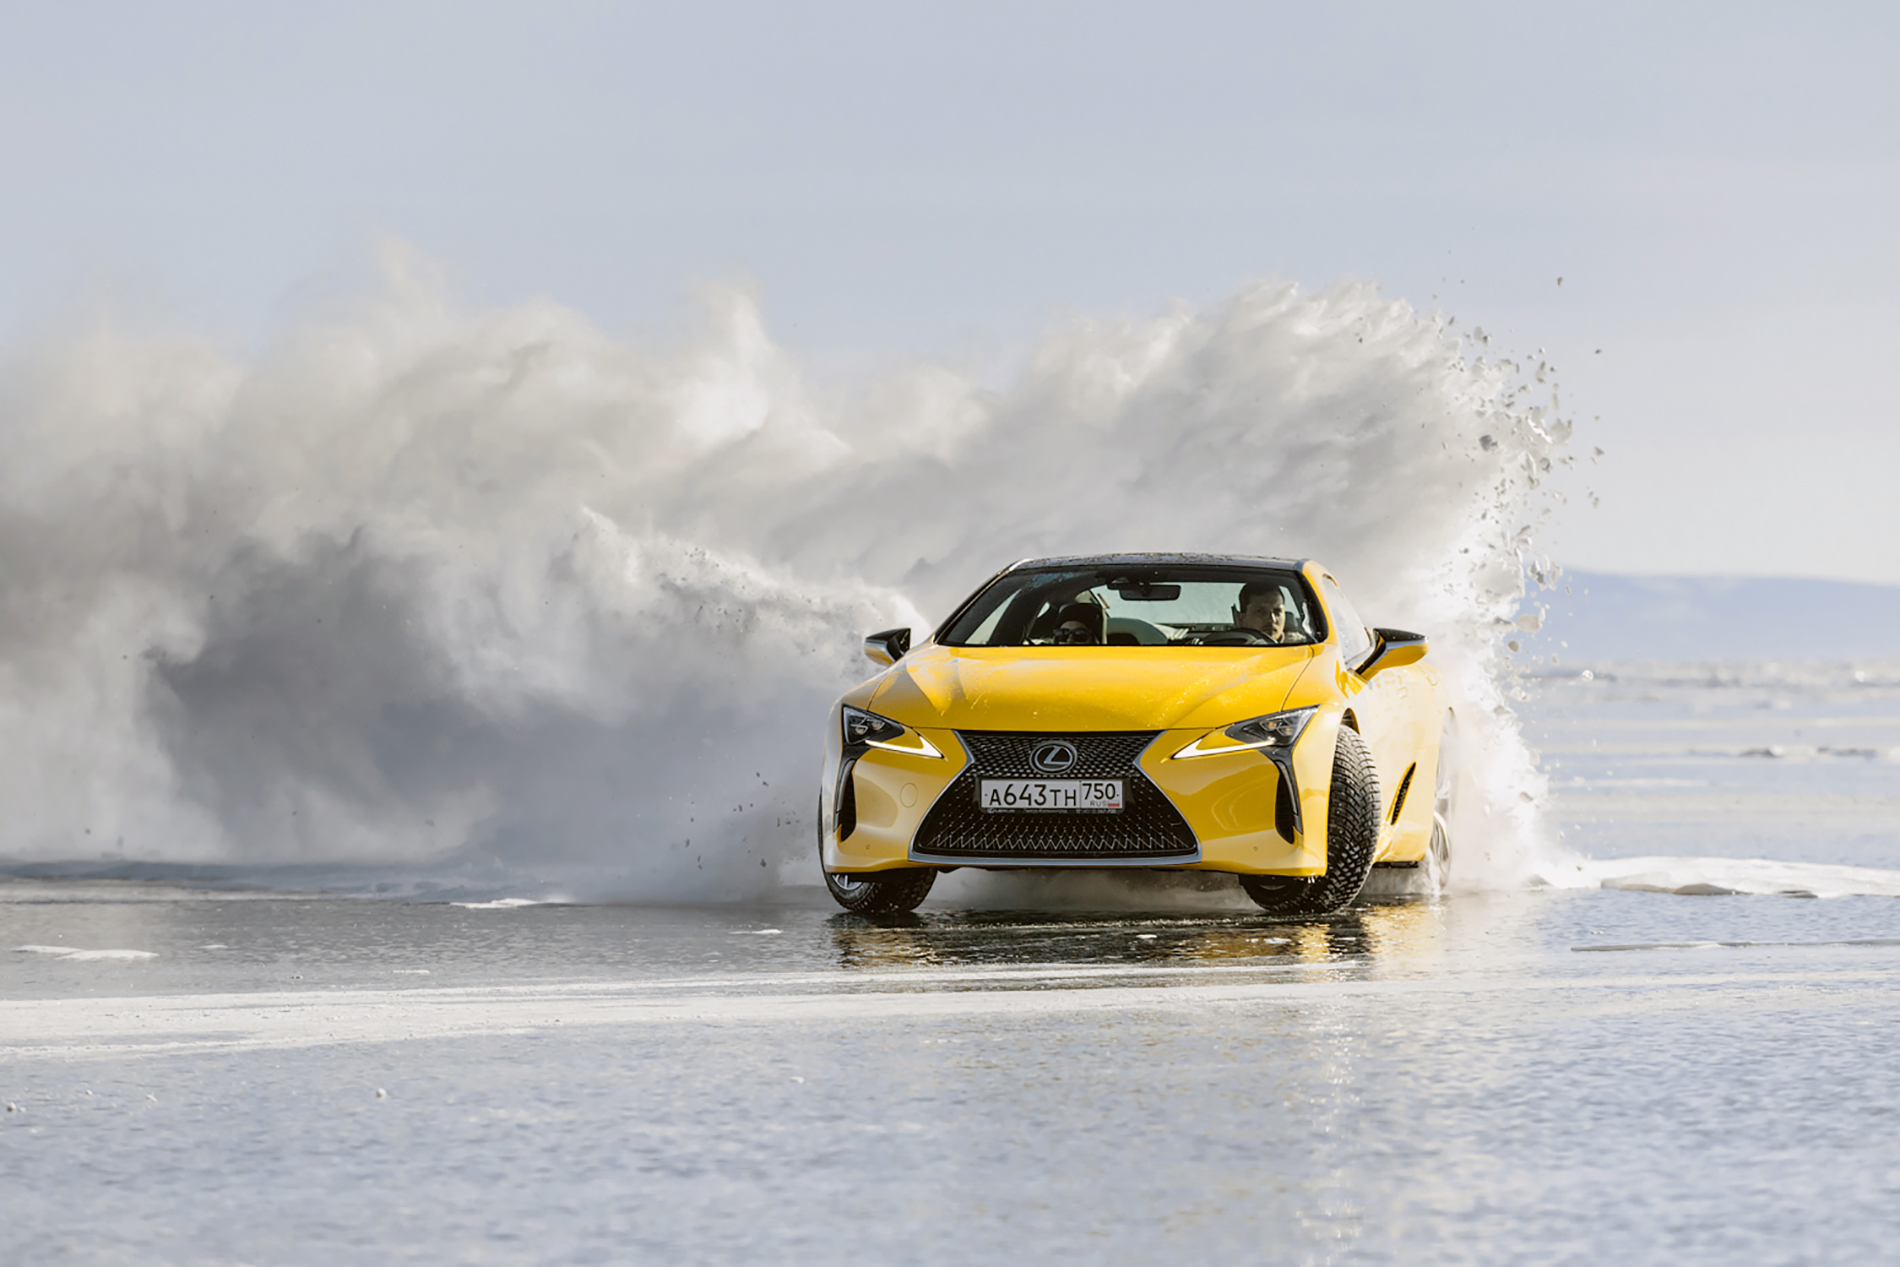 Sportowe coupé i luksusowy SUV na jeziorze Bajkał – nietypowy test dla samochodów Lexusa